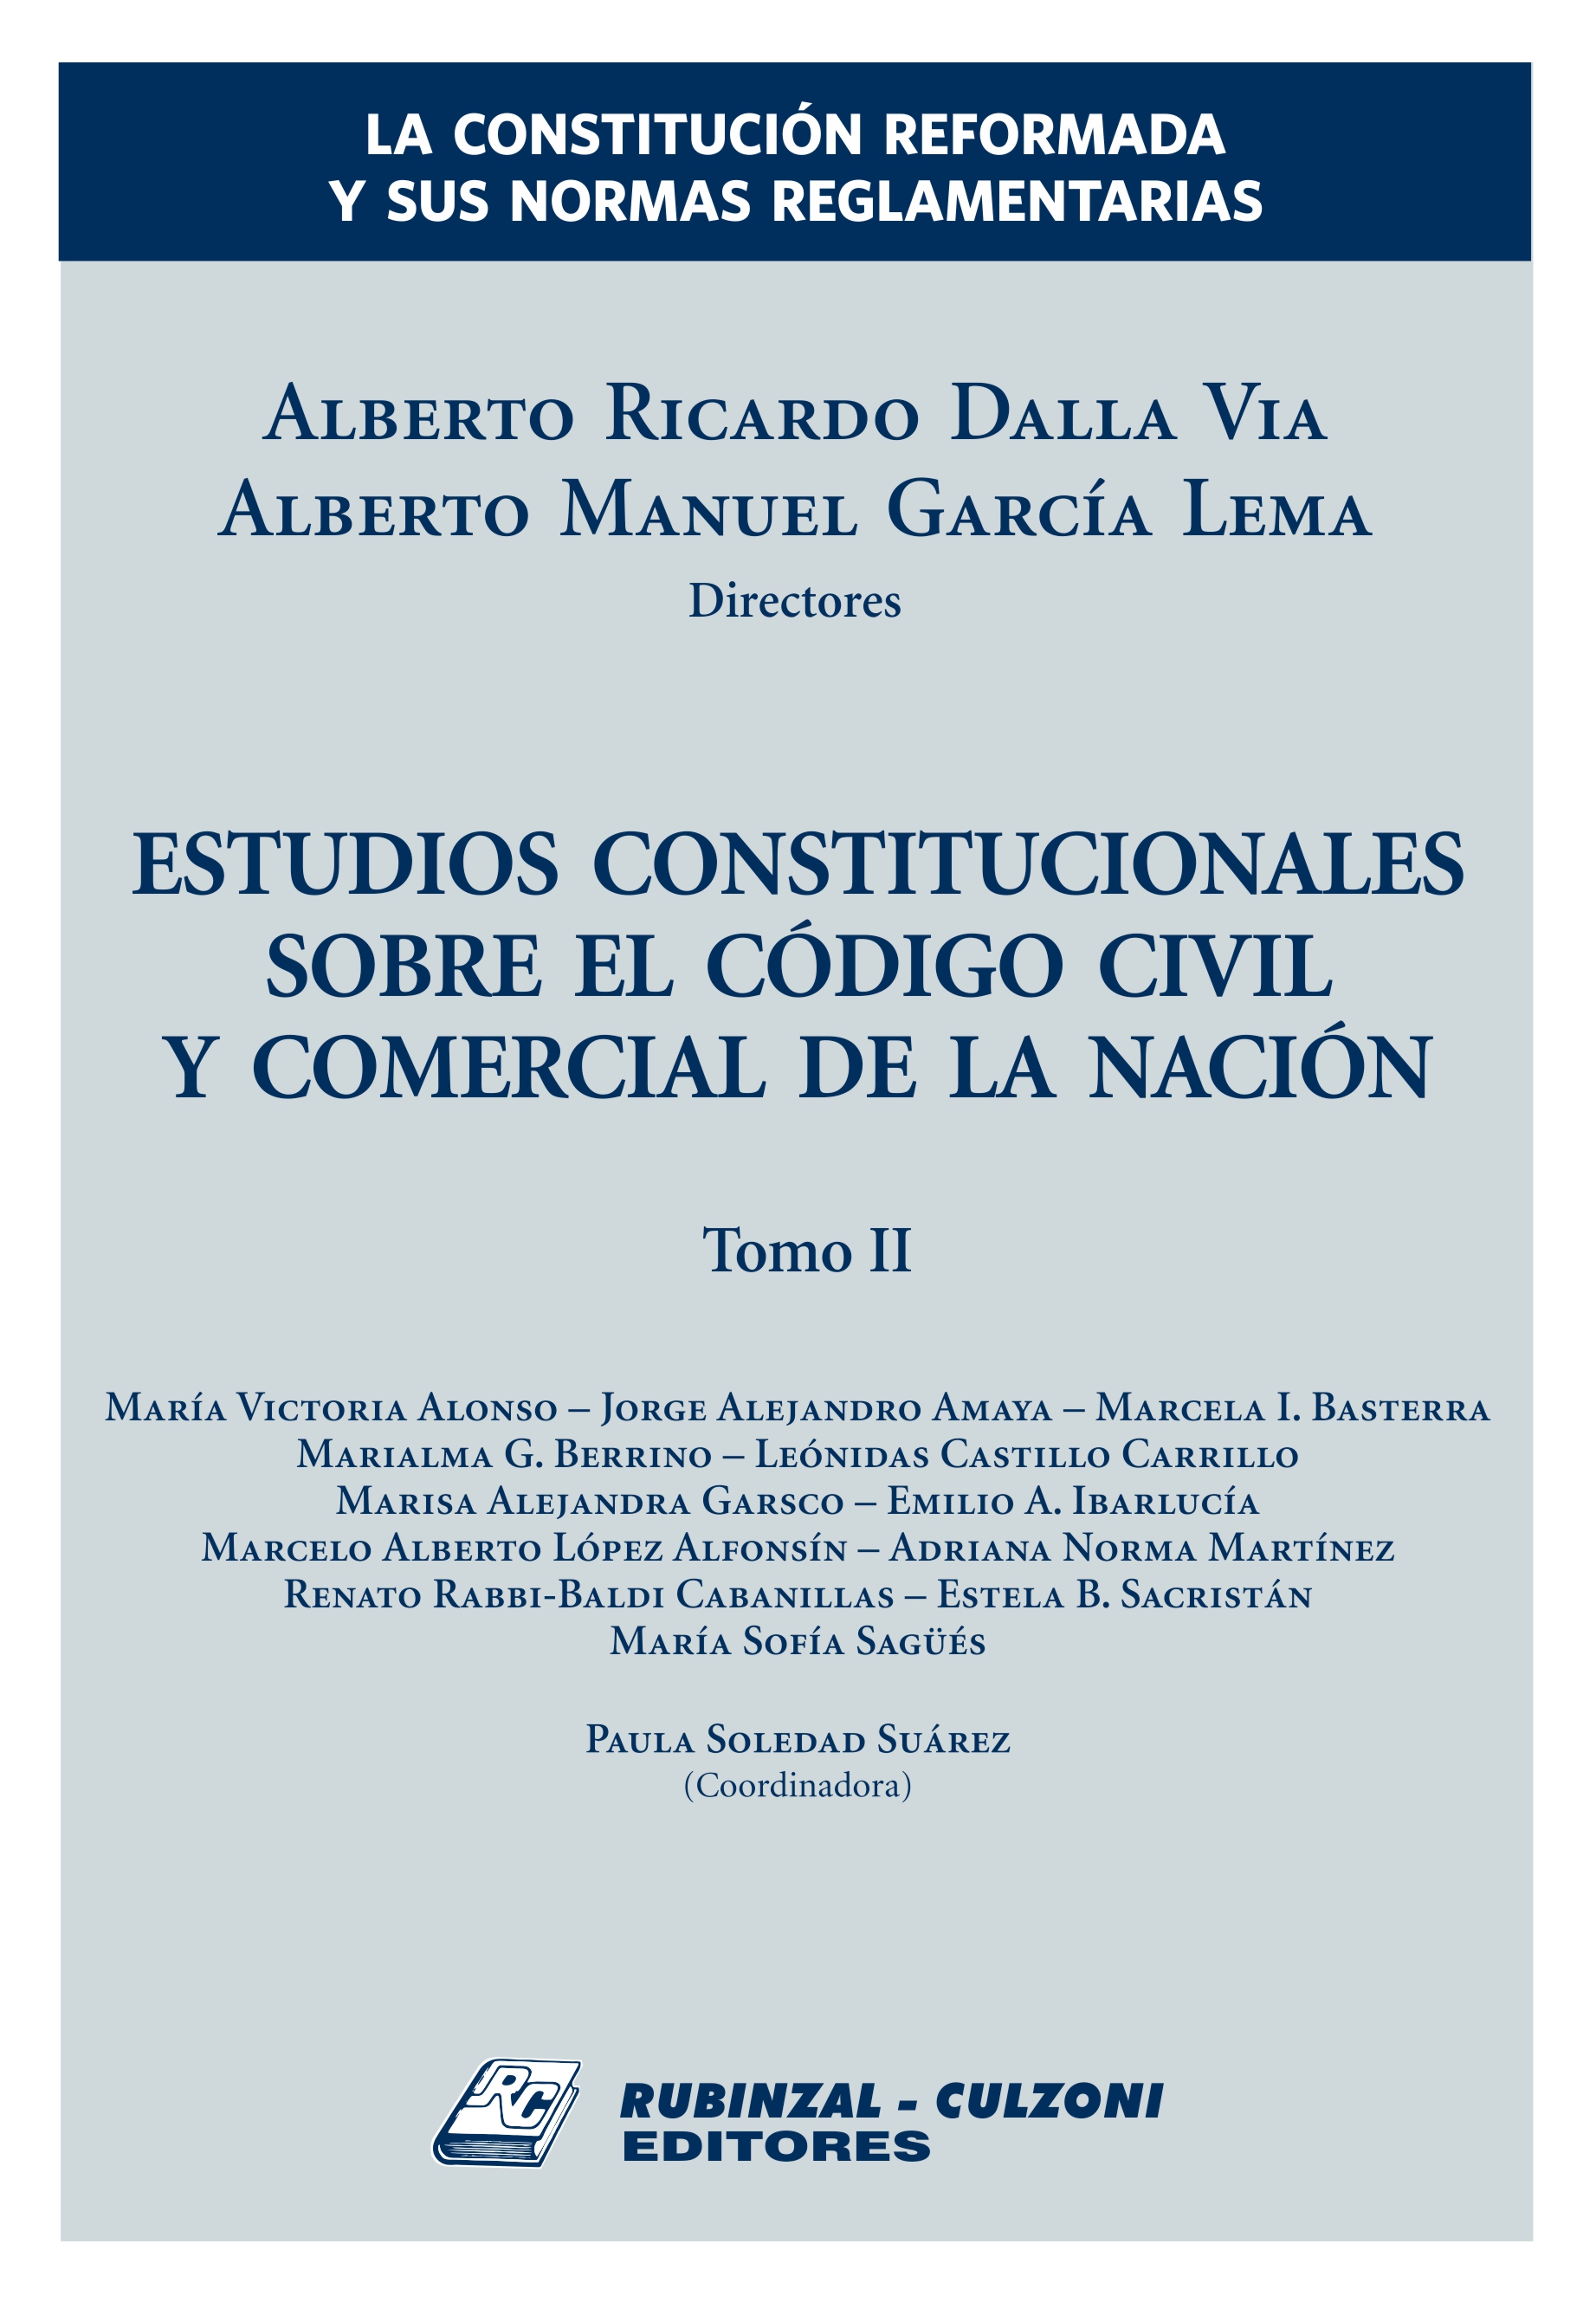 La Constitución reformada y sus normas reglamentarias. Estudios constitucionales sobre el Código Civil y Comercial de la Nación - Tomo II.